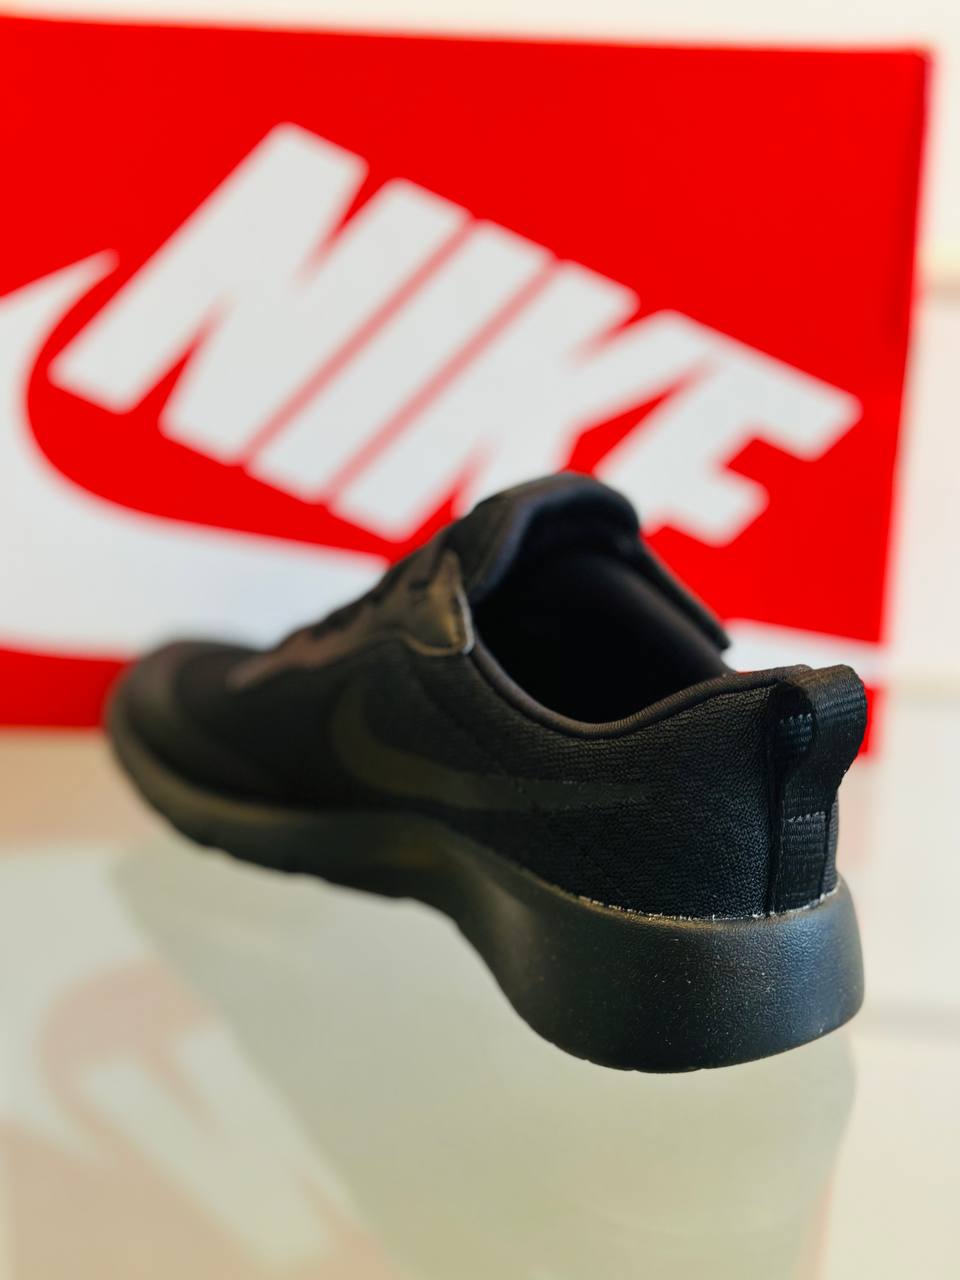 Nike sneakers